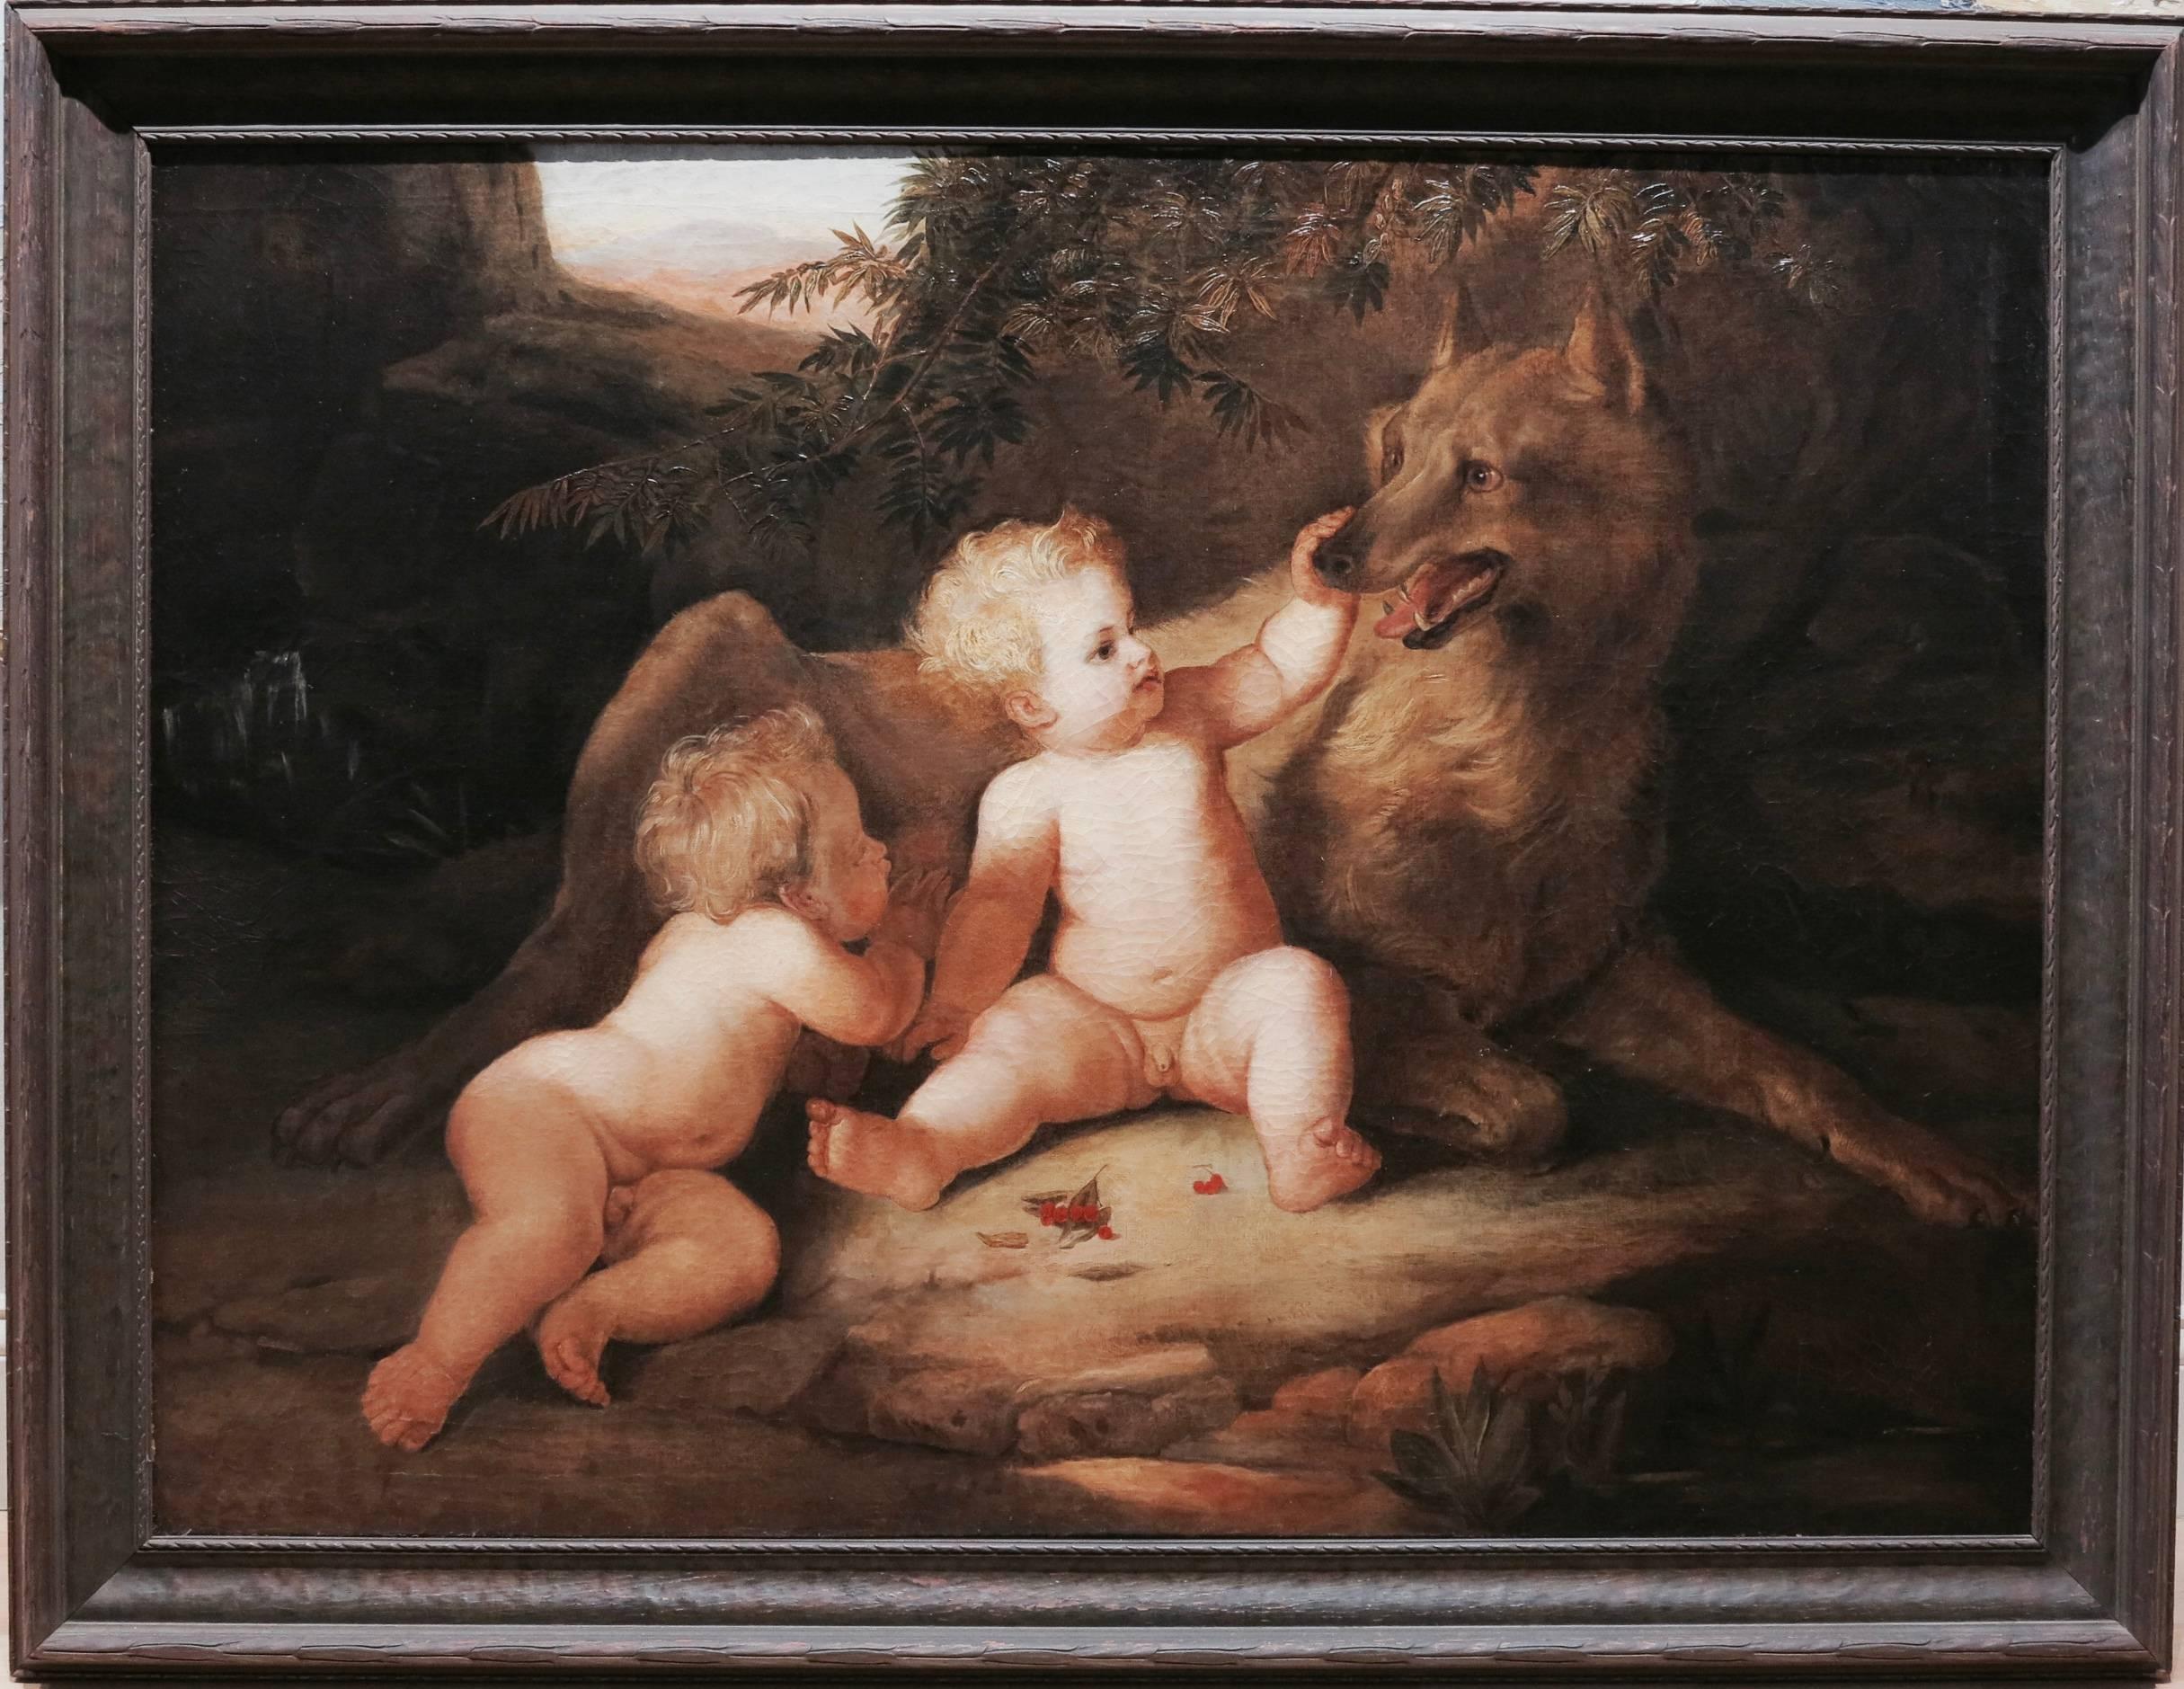 Superbe peinture de la fin du XVIIIe ou du début du XIXe siècle représentant Romulus et Remus s'ébattant de la loup-garou. L'huile sur toile mesure 76::2 cm x 101::6 cm ; 91::4 cm x 111::9 cm encadrée. Signé de façon illisible en bas à droite.